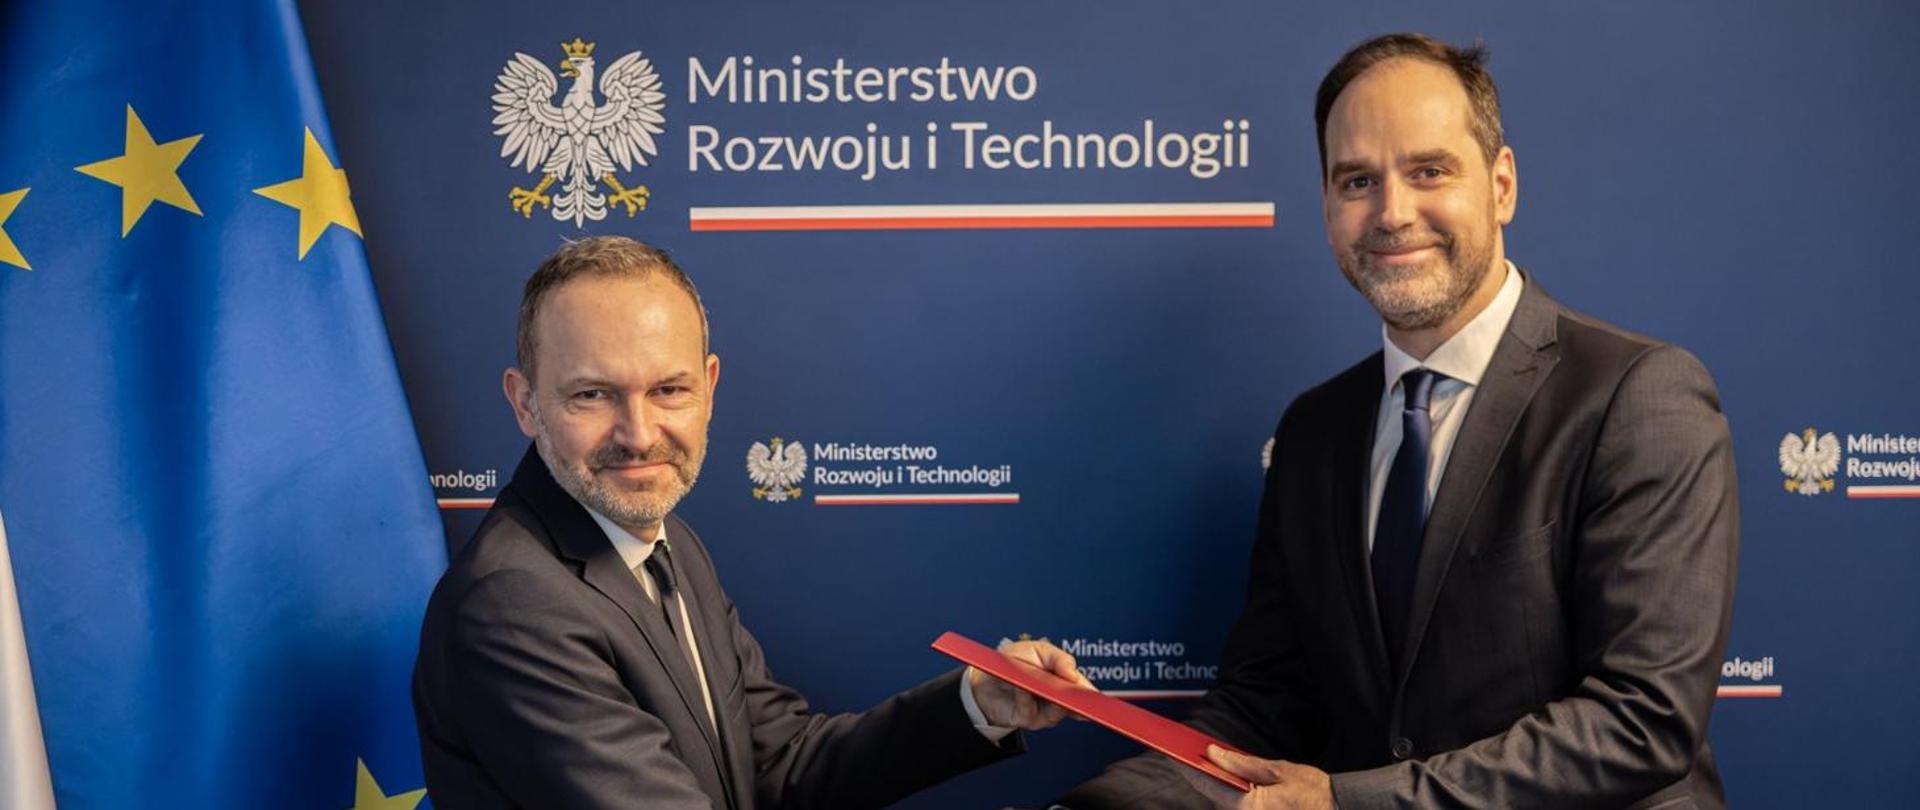 Na zdjęciu widać ministra Krzysztofa Hetmana i wiceministra Ignacego Niemczyckiego. W tle baner MRiT, a po prawej stronie flagi Polski i UE.